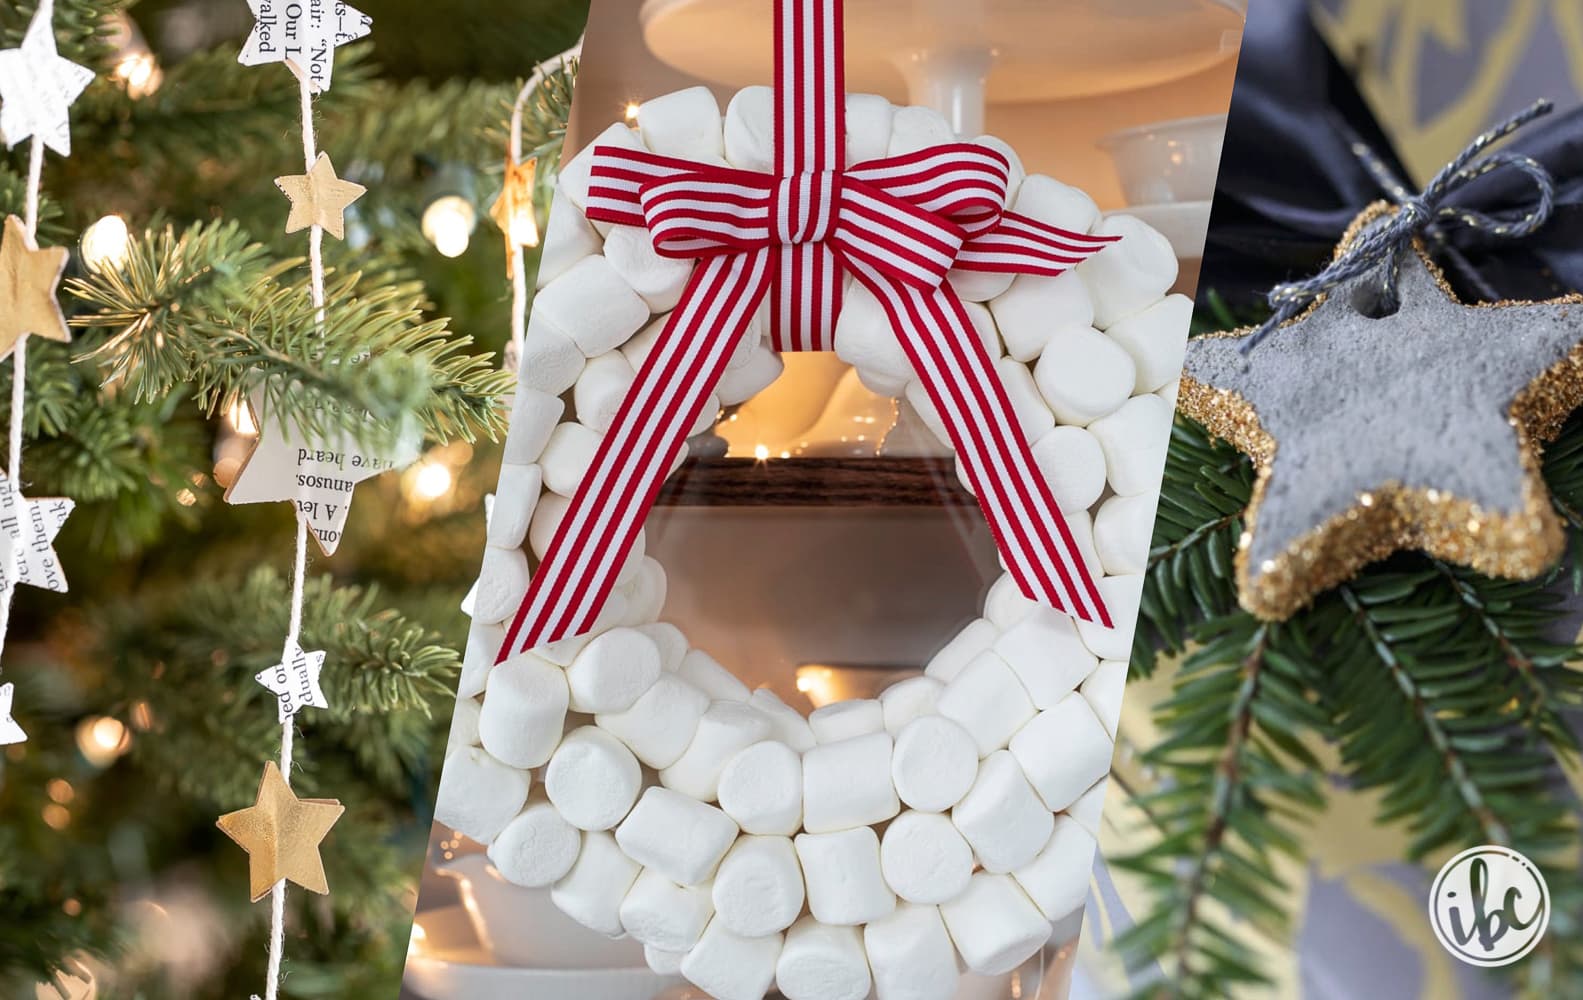 Unique Homemade Christmas Decorations #christmas #holiday #decorations #DIY #handmade #decor #craft